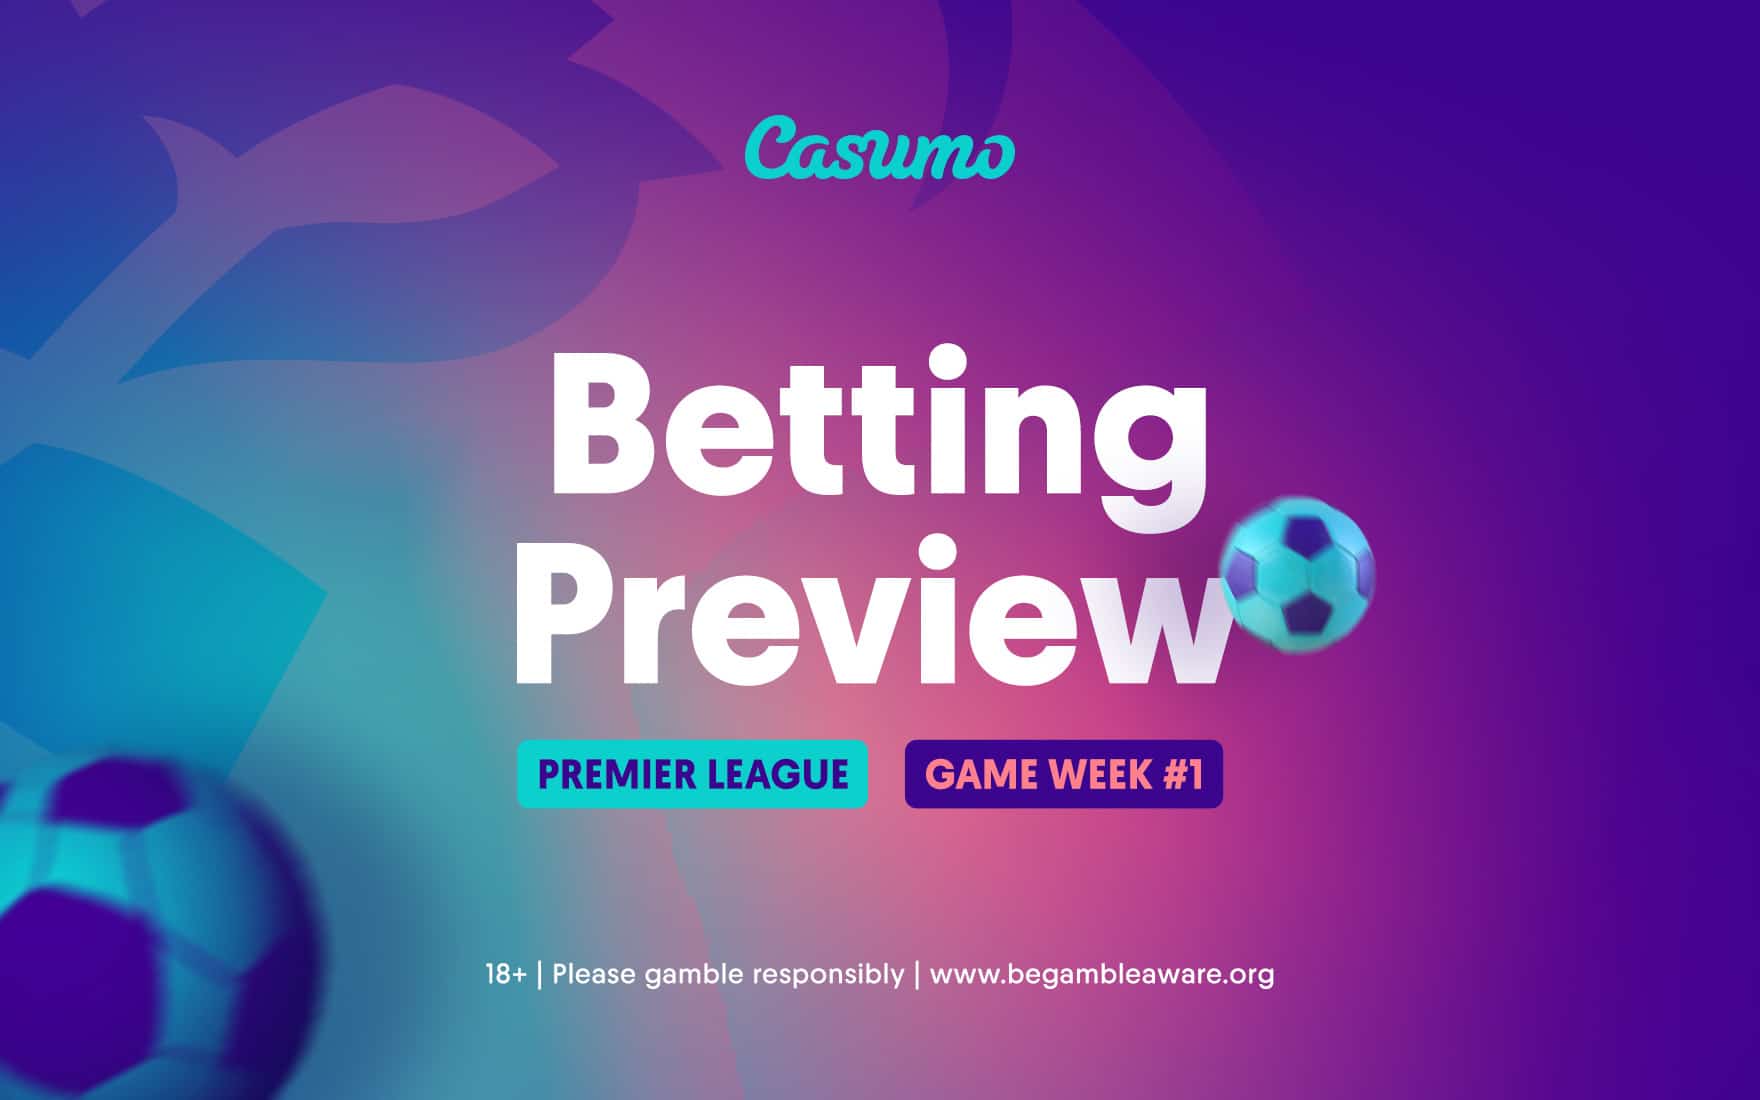 Premier League Betting Preview Casumo 2020